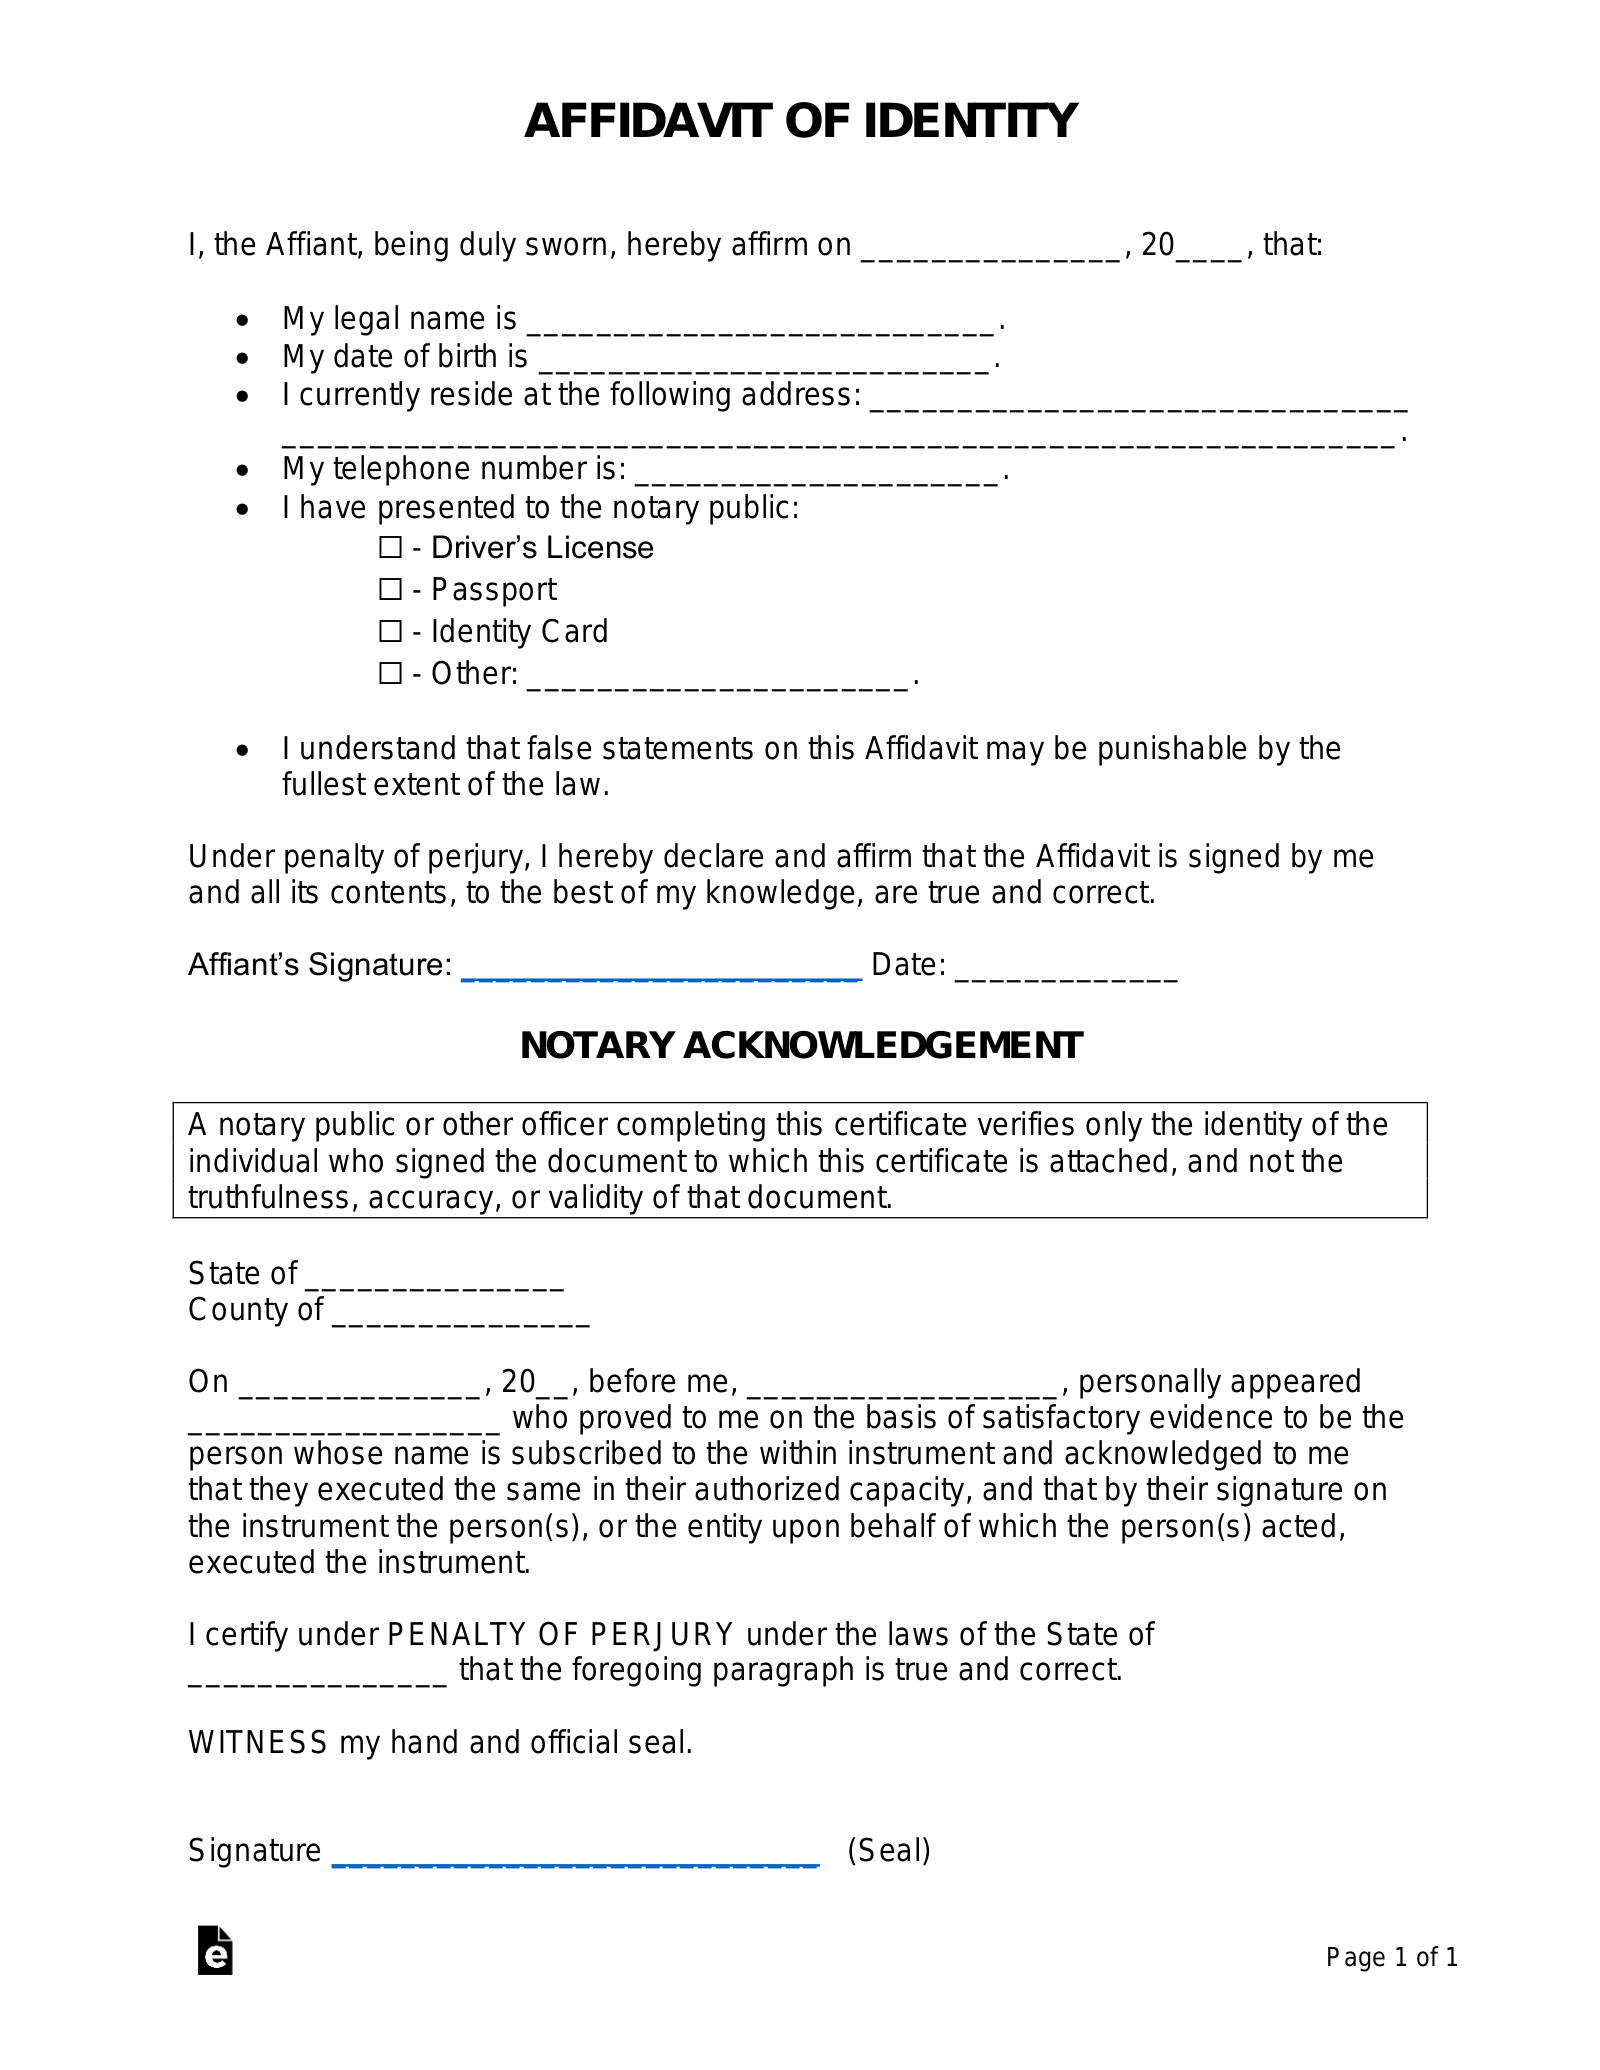 Free Affidavit of Identity Form - PDF | Word – eForms